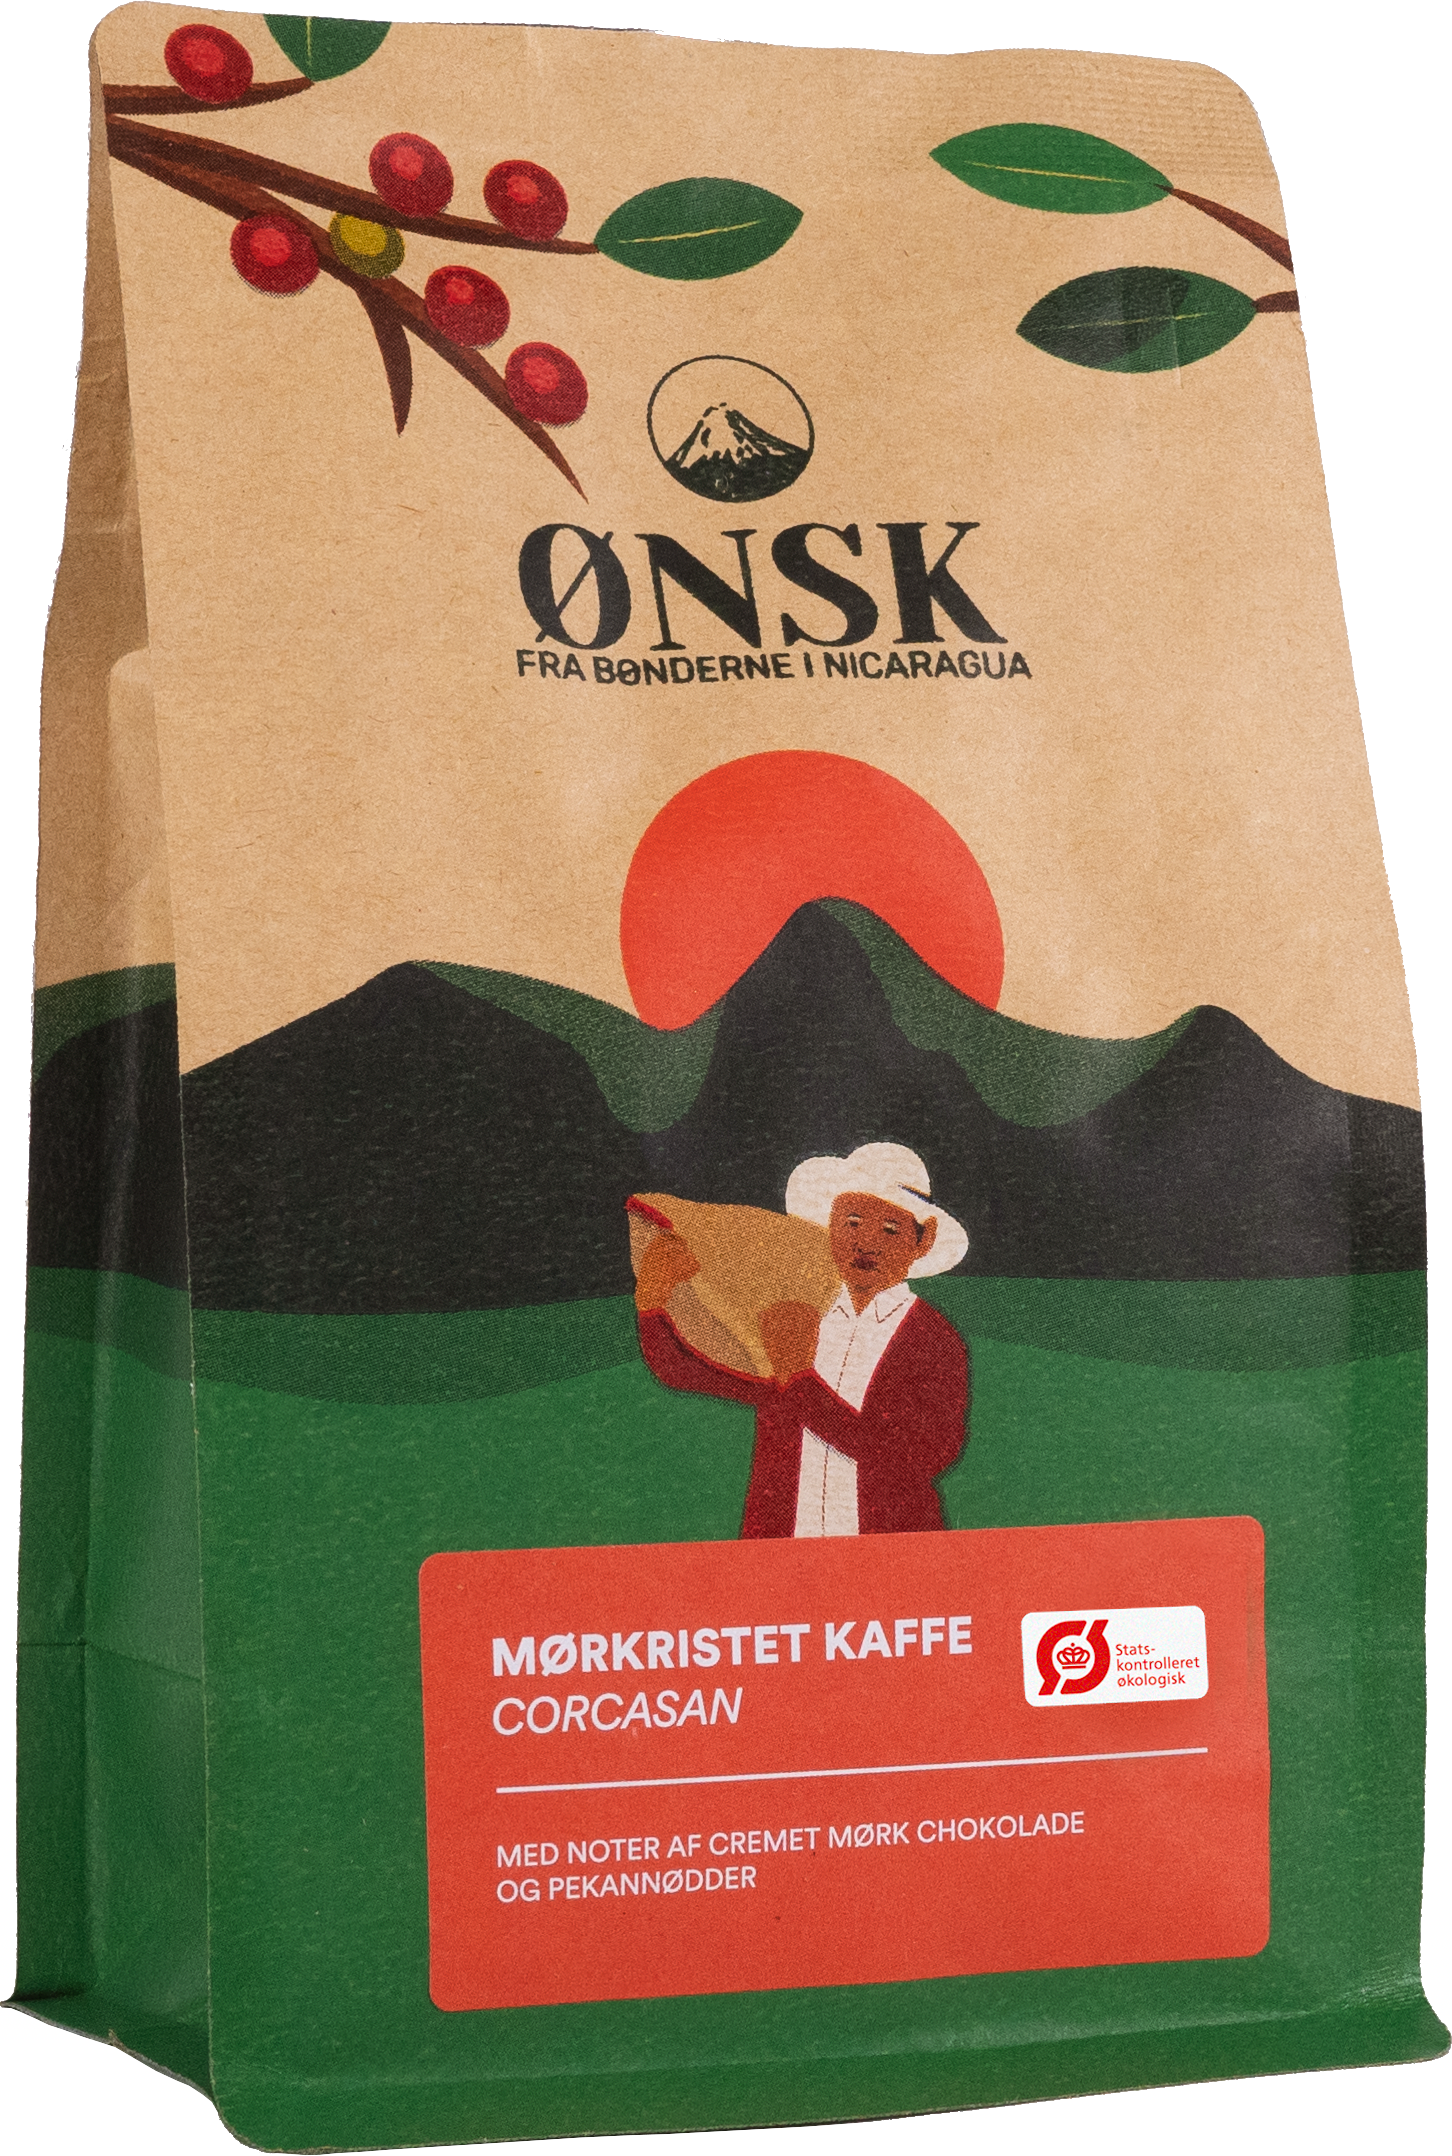 Ekstra mørkristet kaffe fra ØNSK. Corcasan.